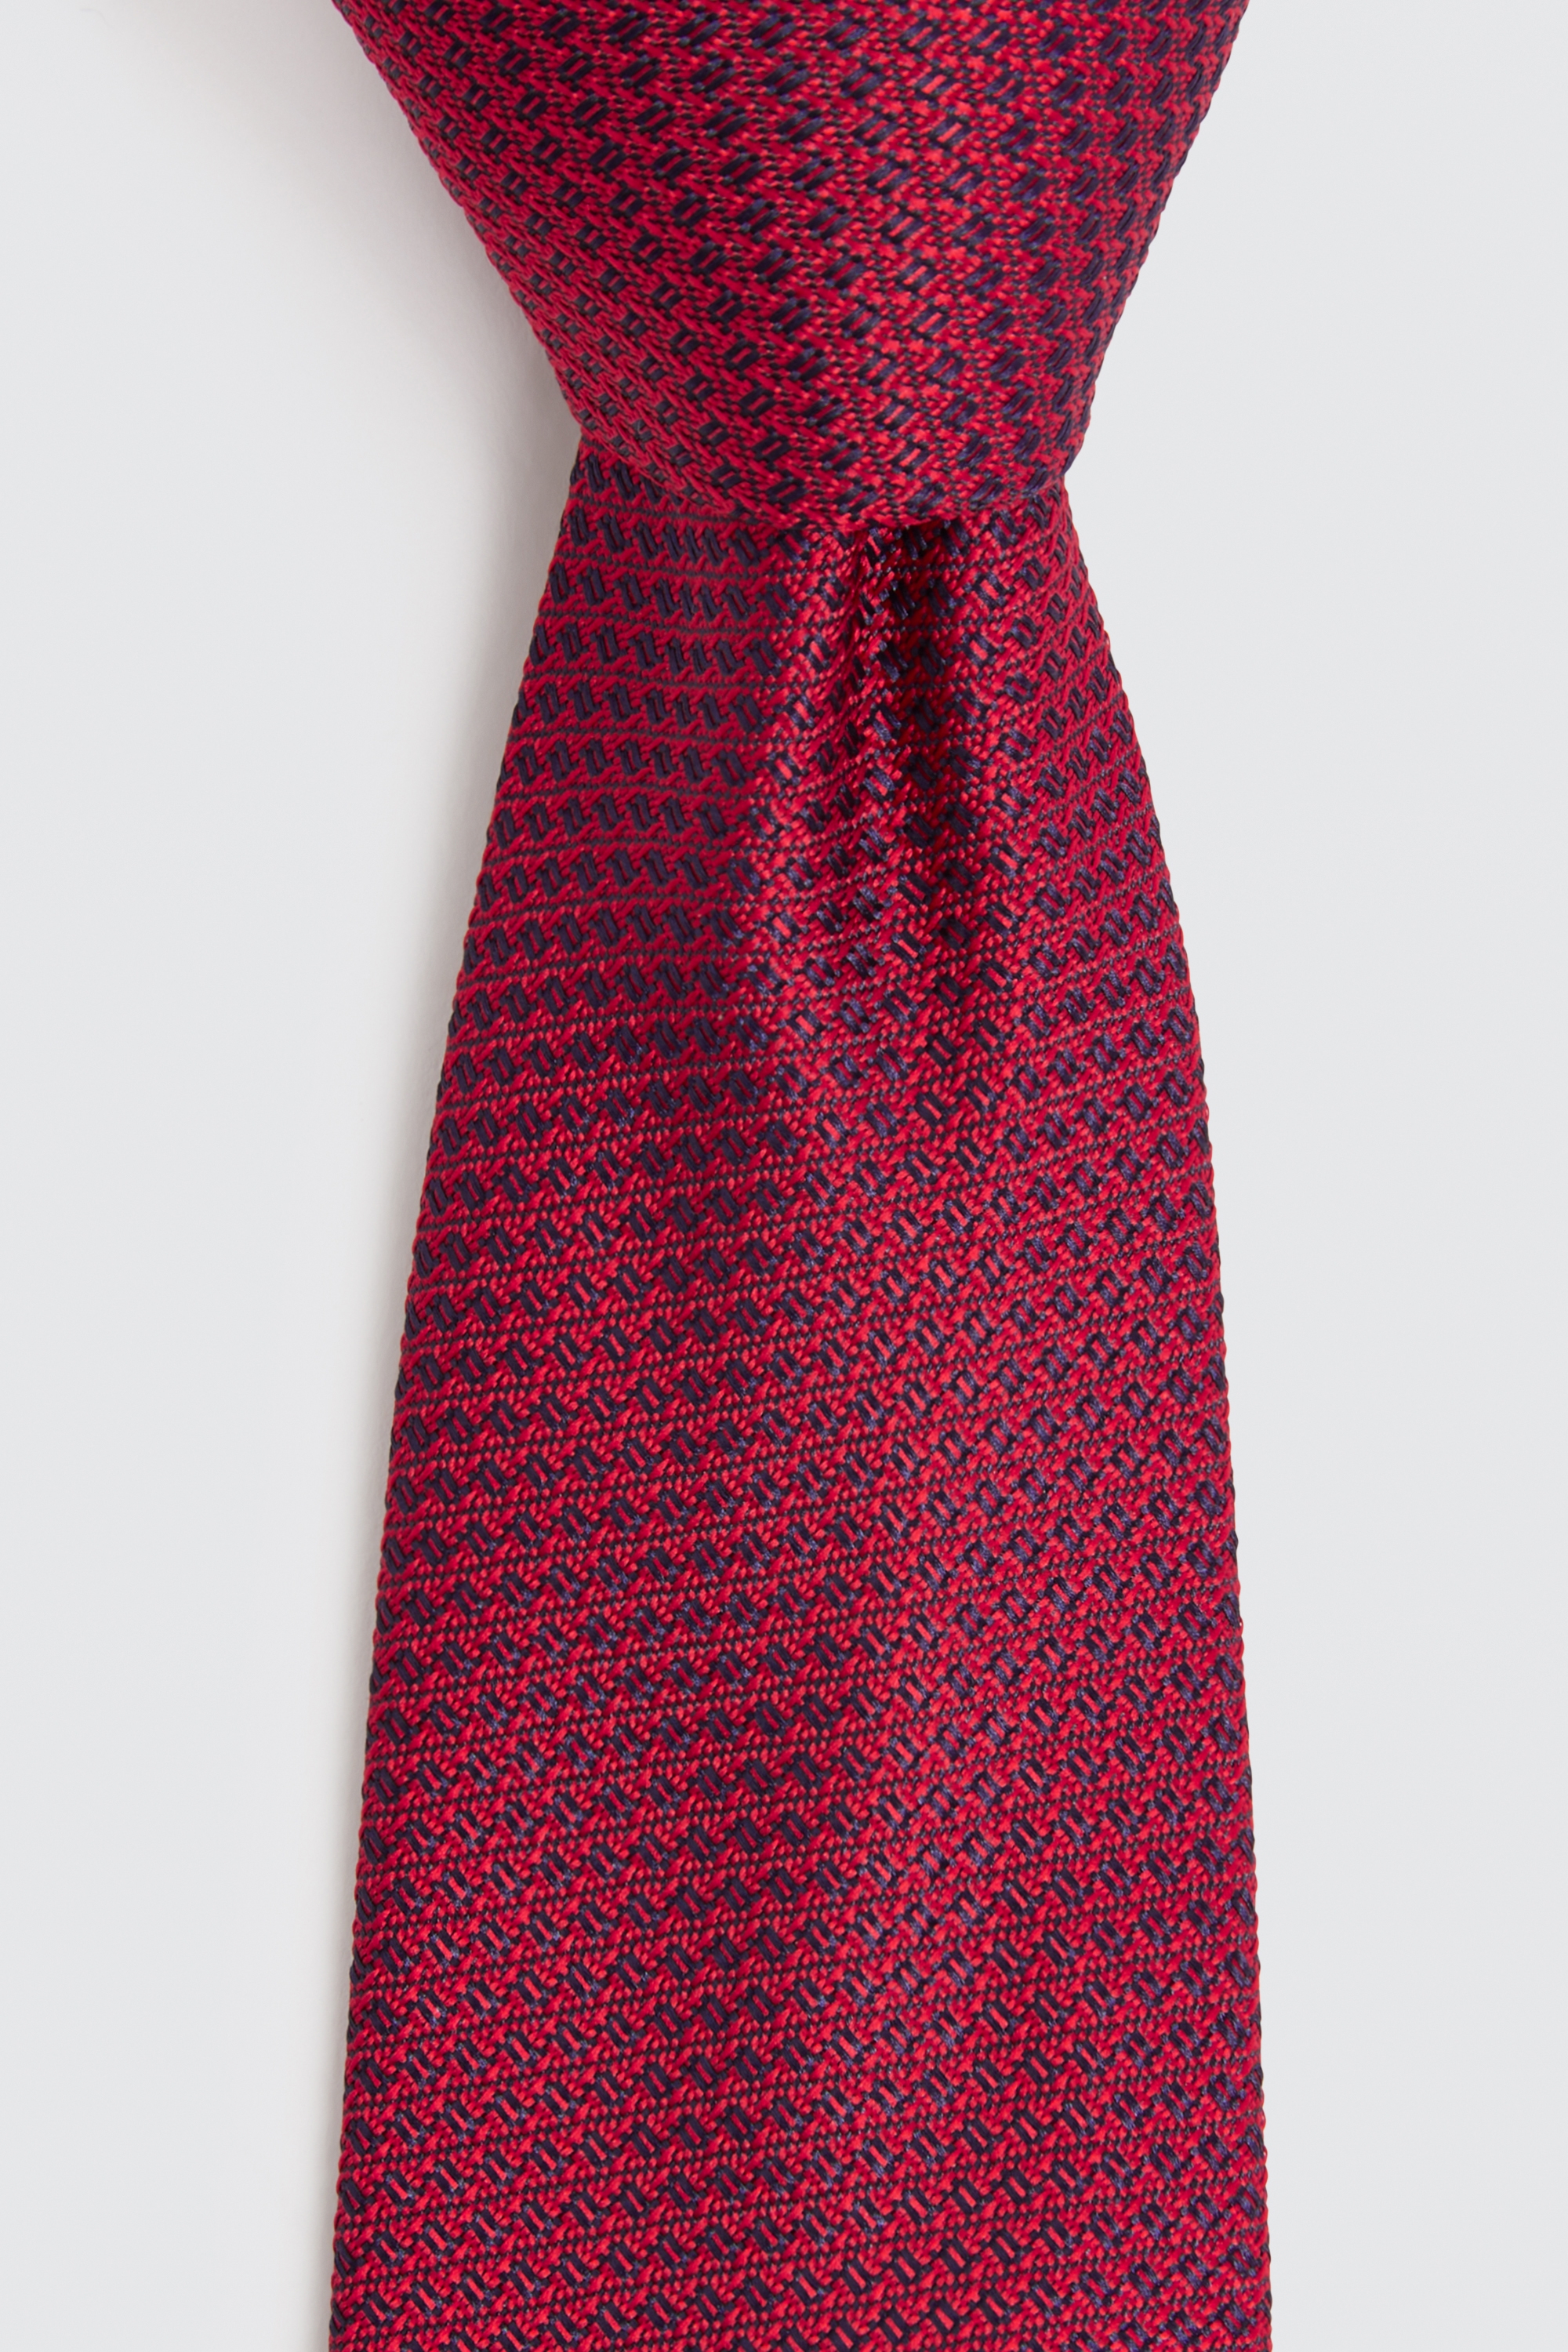 Red Neckties